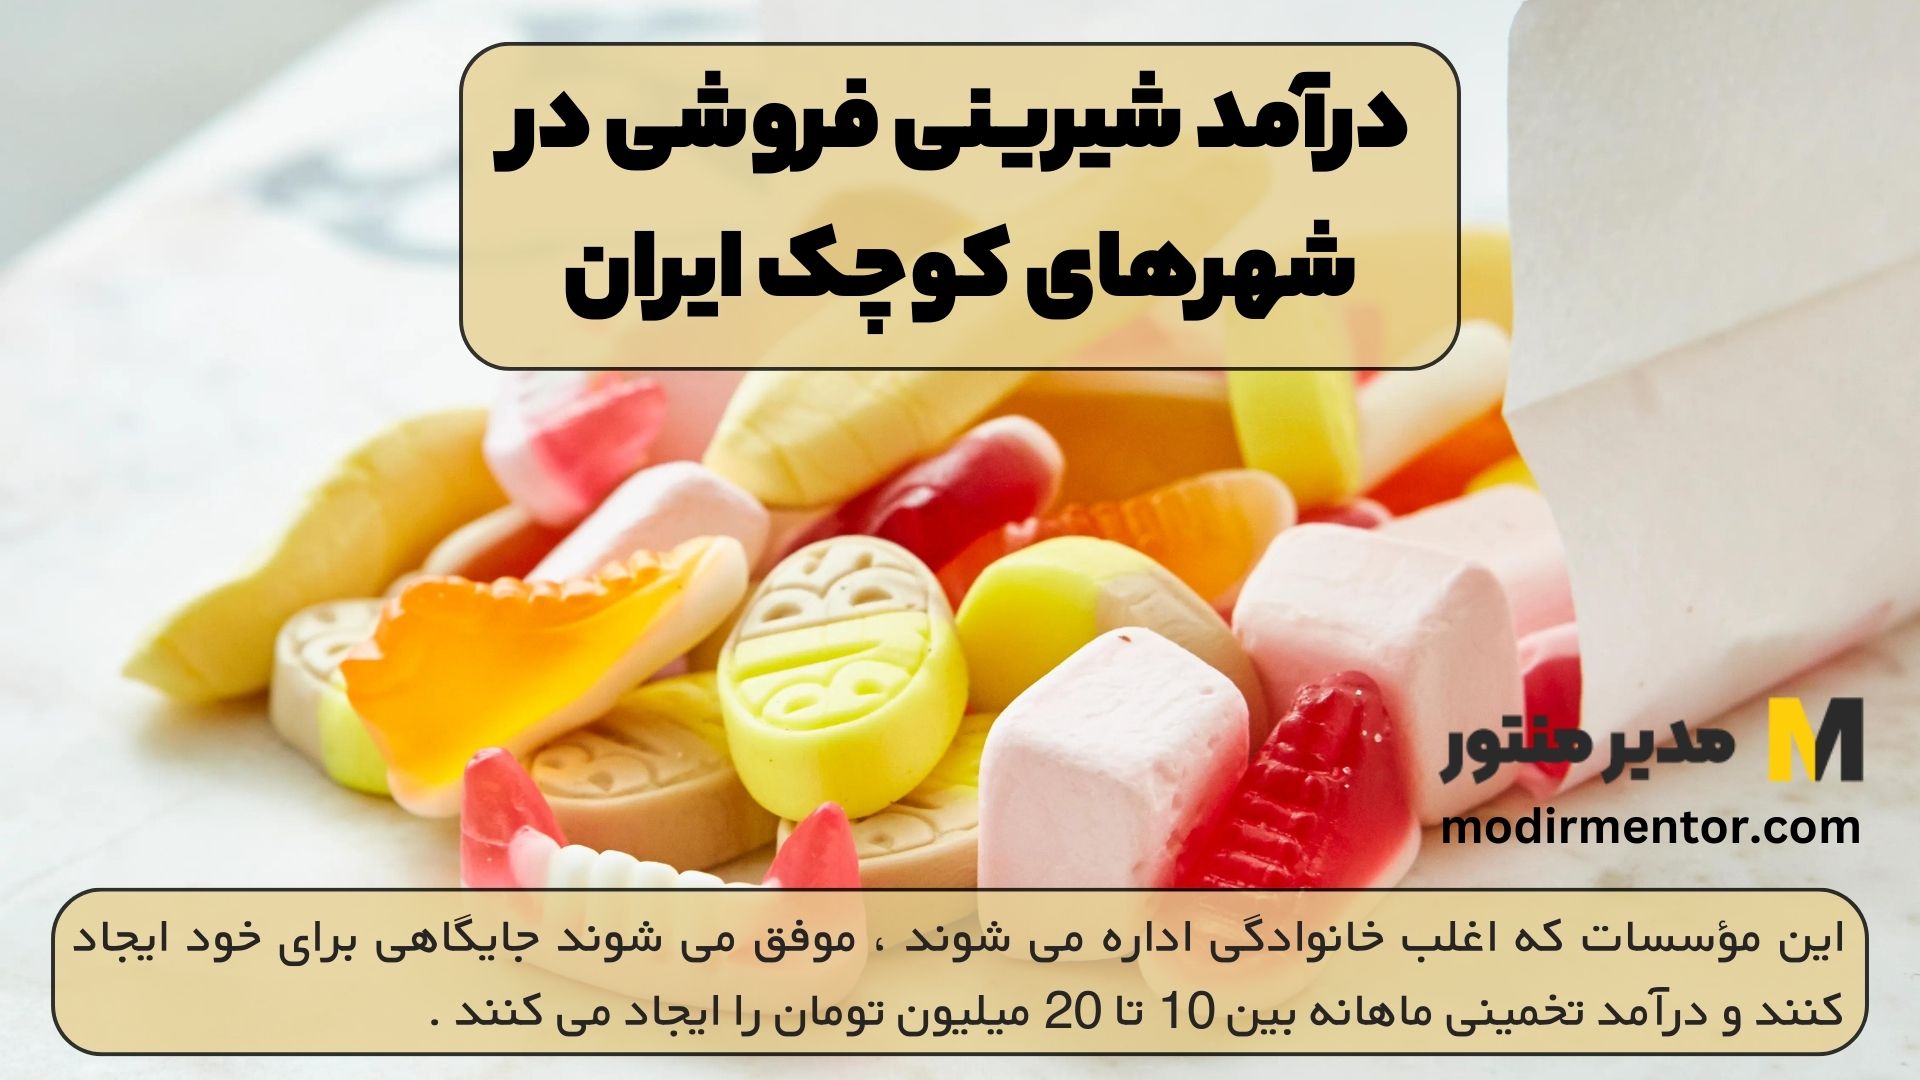 درآمد شیرینی فروشی در شهرهای کوچک ایران